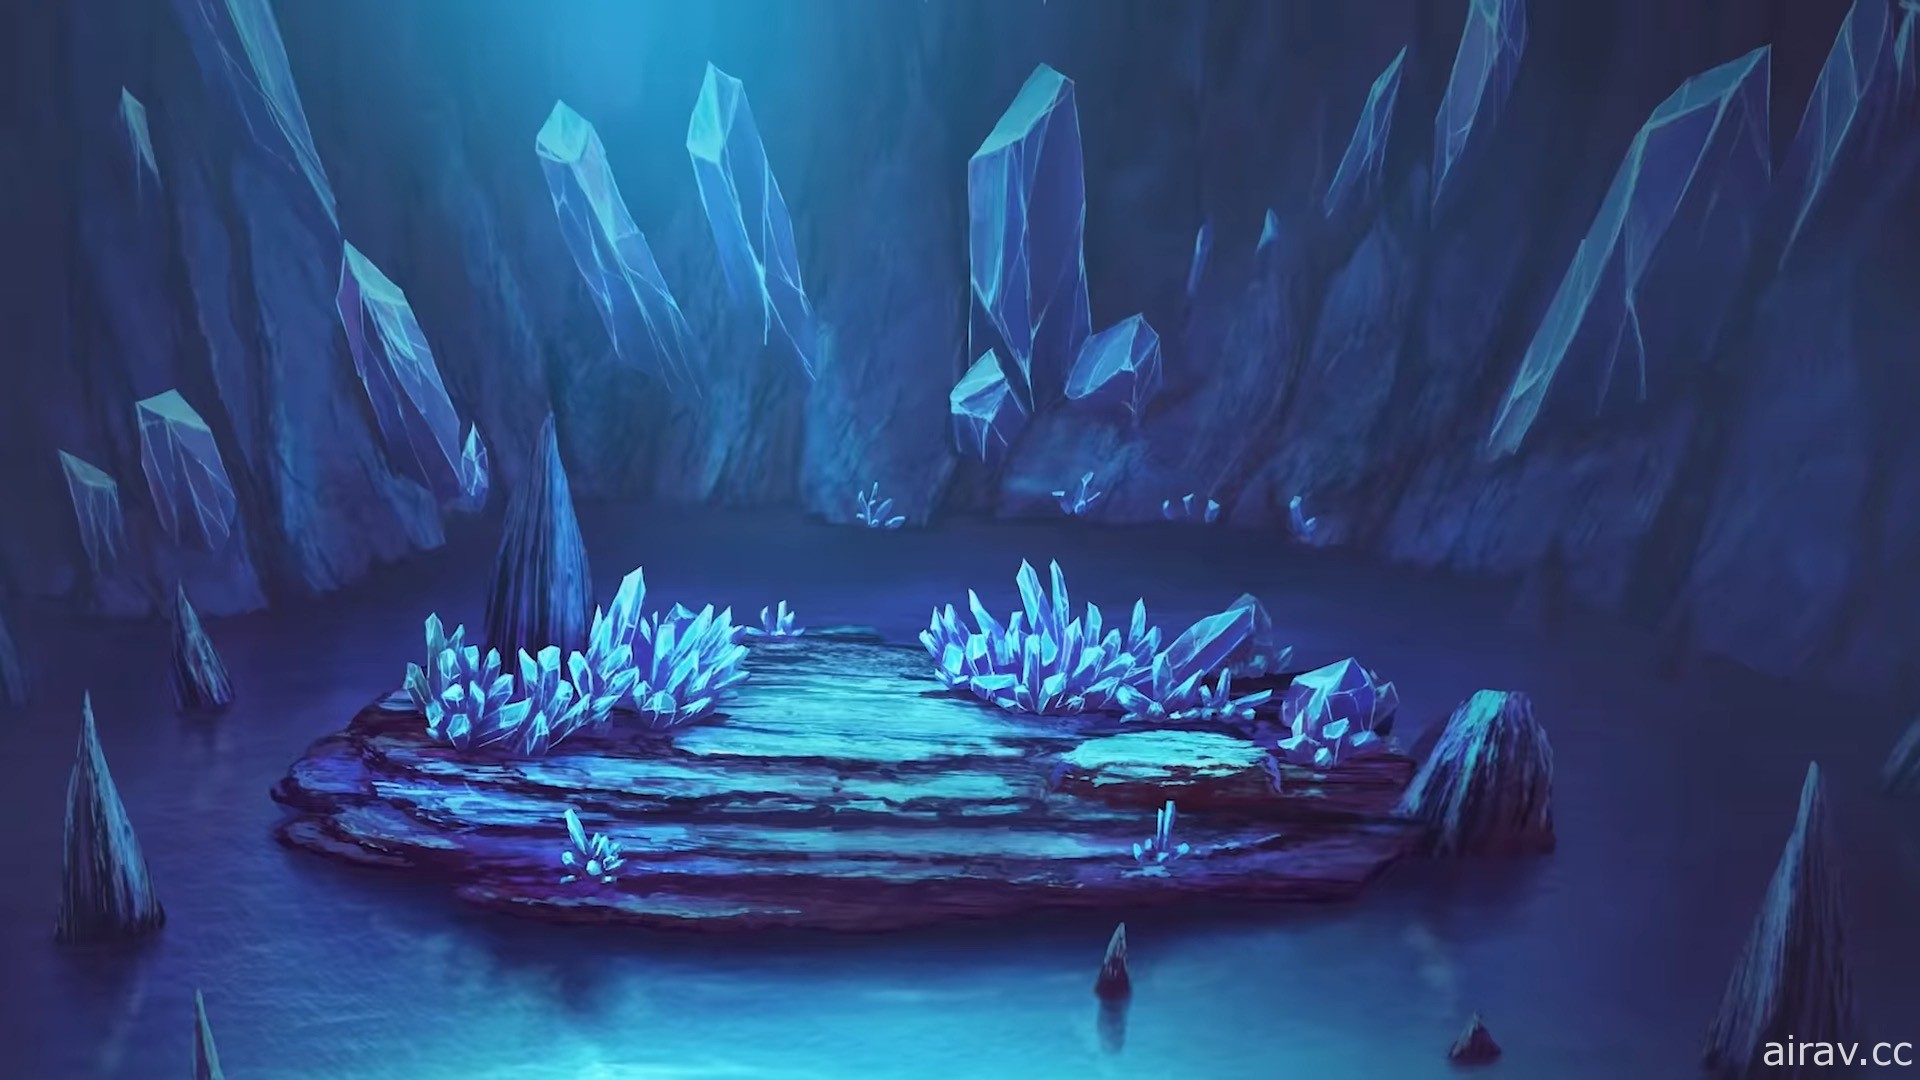 全新网络动画《宝可梦 进化》9 月开播 跨越八个地区的壮阔物语